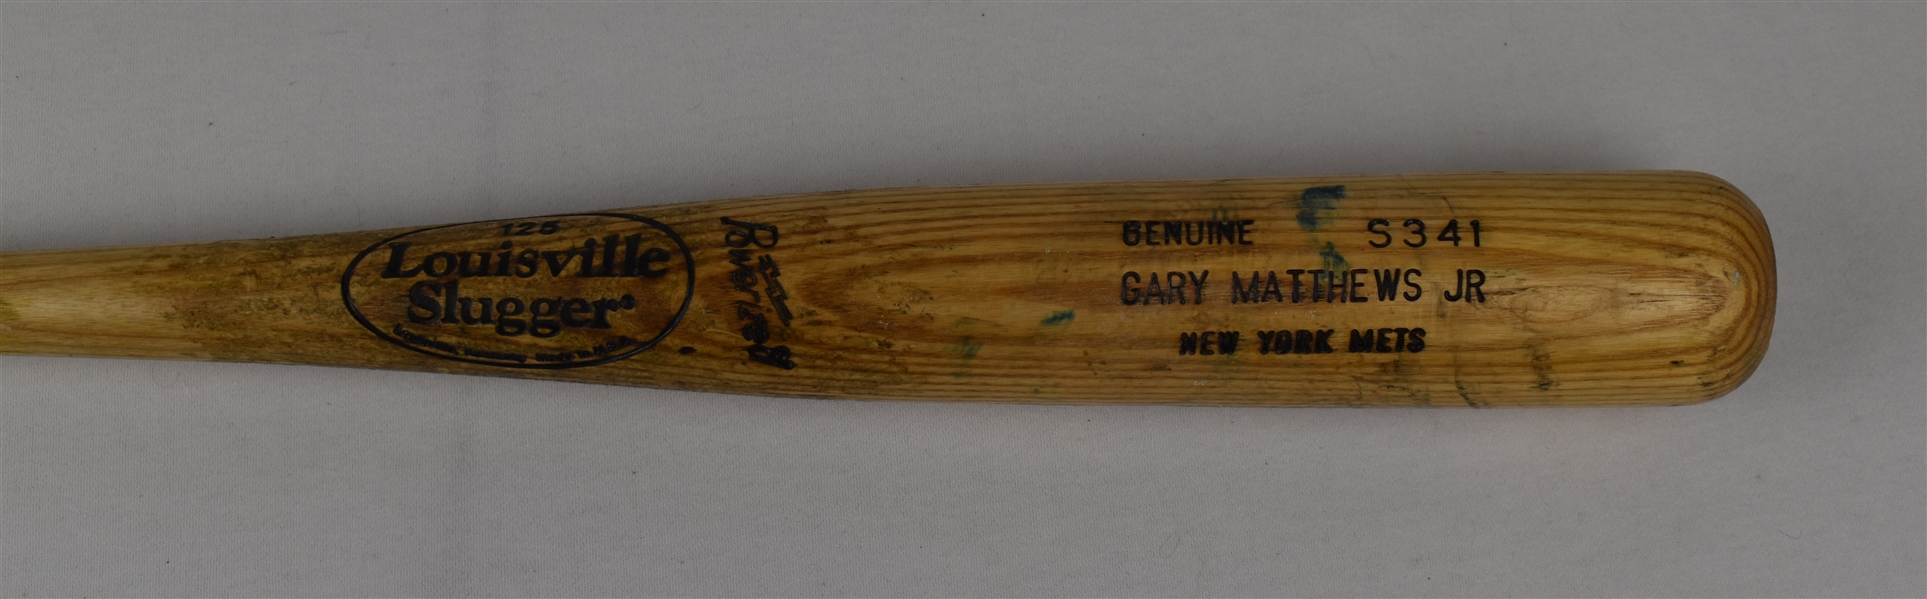 Gary Matthews Jr. 2010 Game Used Bat